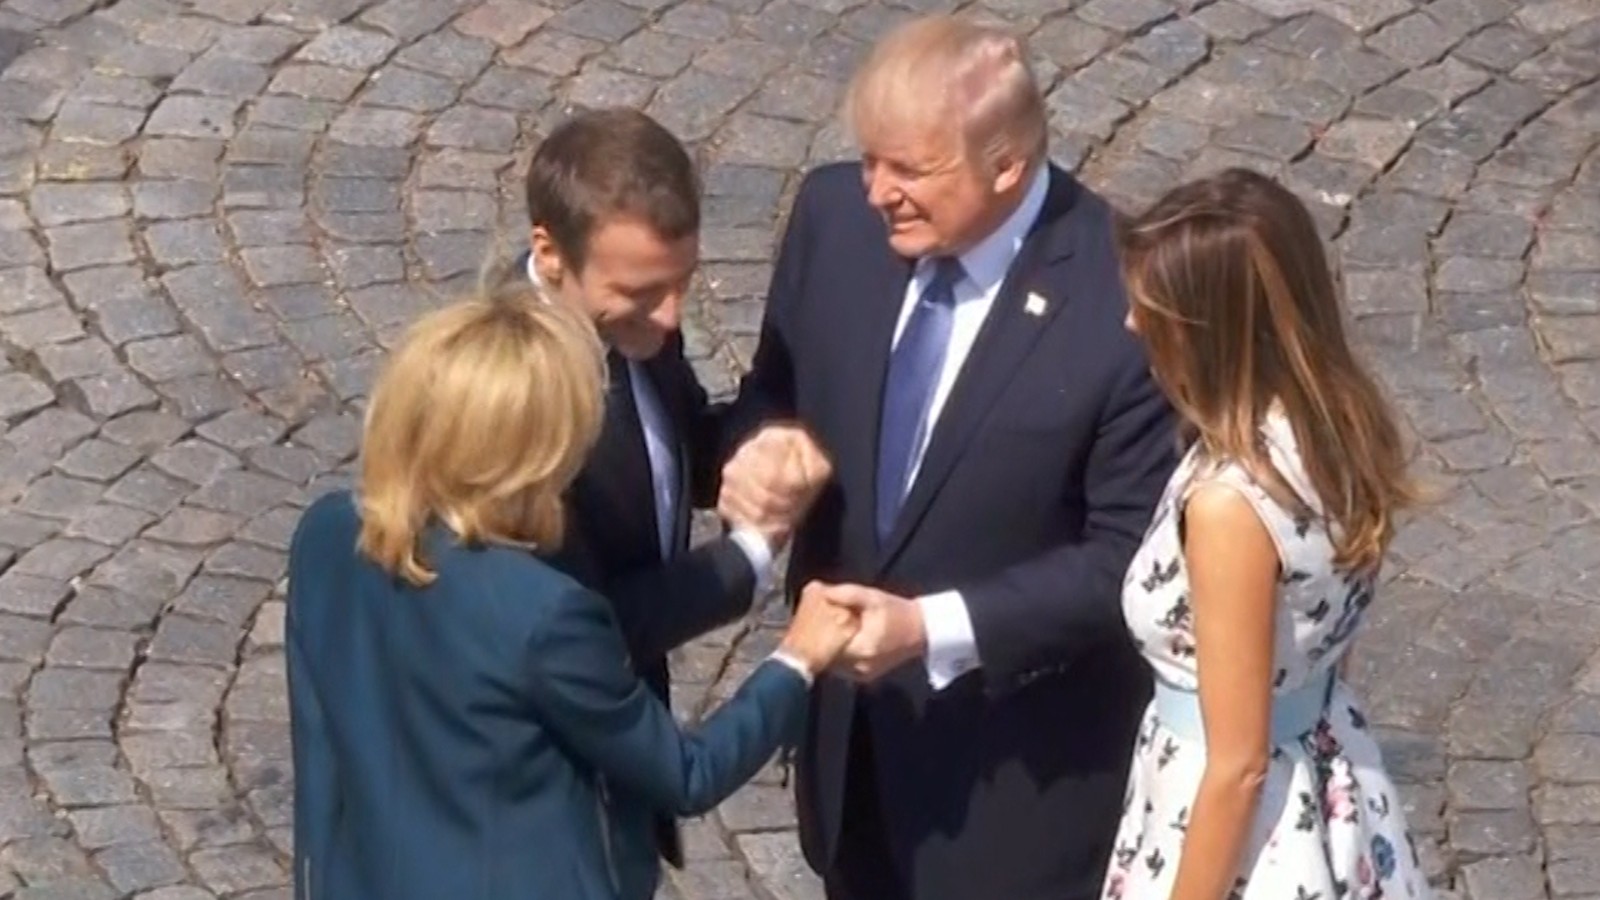 40-sekundowy rywalizacyjny handshake z Macronem w którym Prezydent Francji stracił równowage. Macron to polityczny rywal Trumpa.